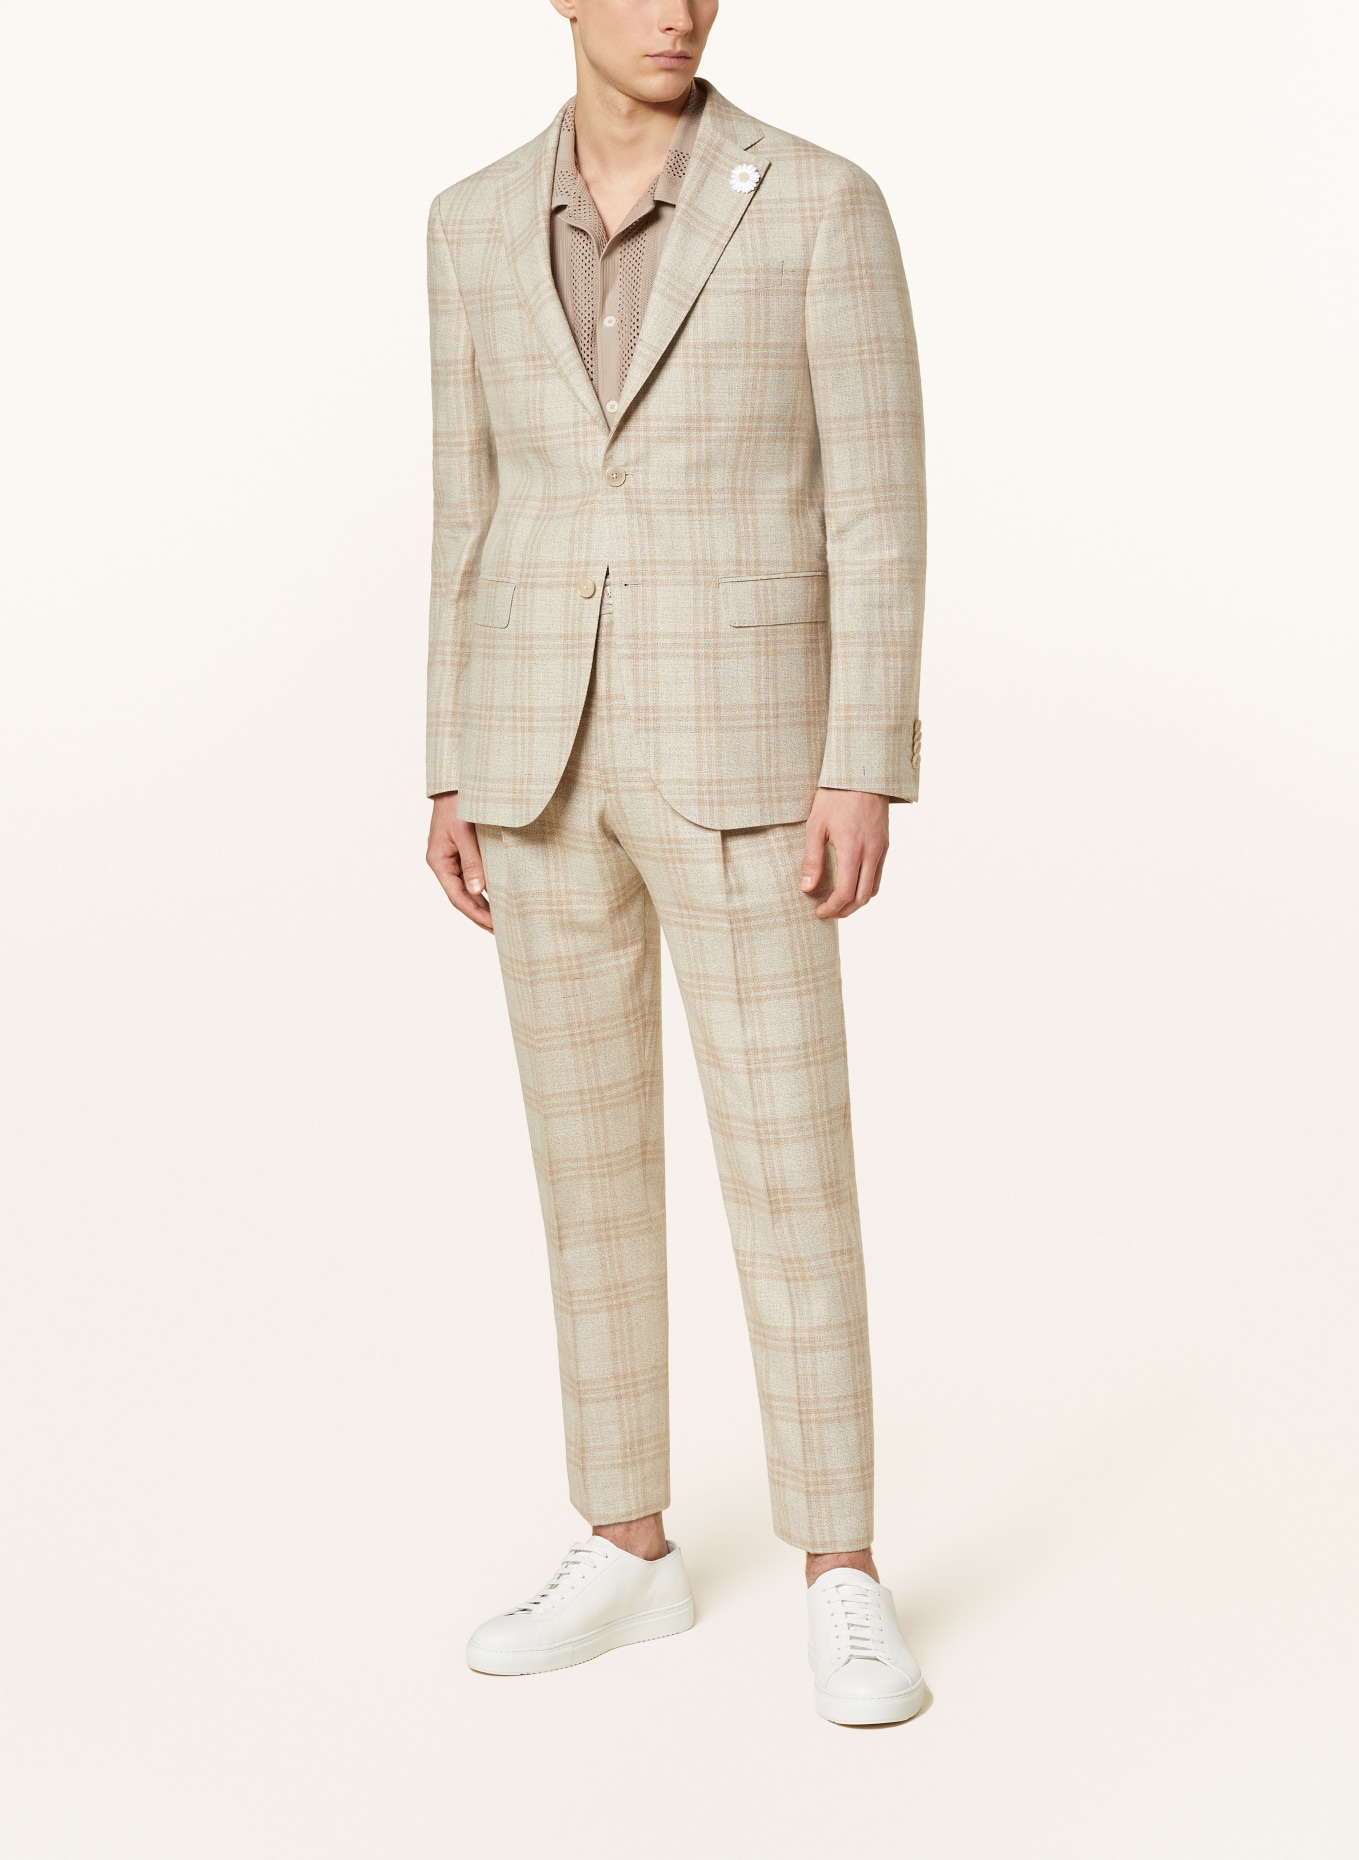 BALDESSARINI Suit jacket SERANO slim fit, Color: 8620 Irish Cream Check (Image 2)